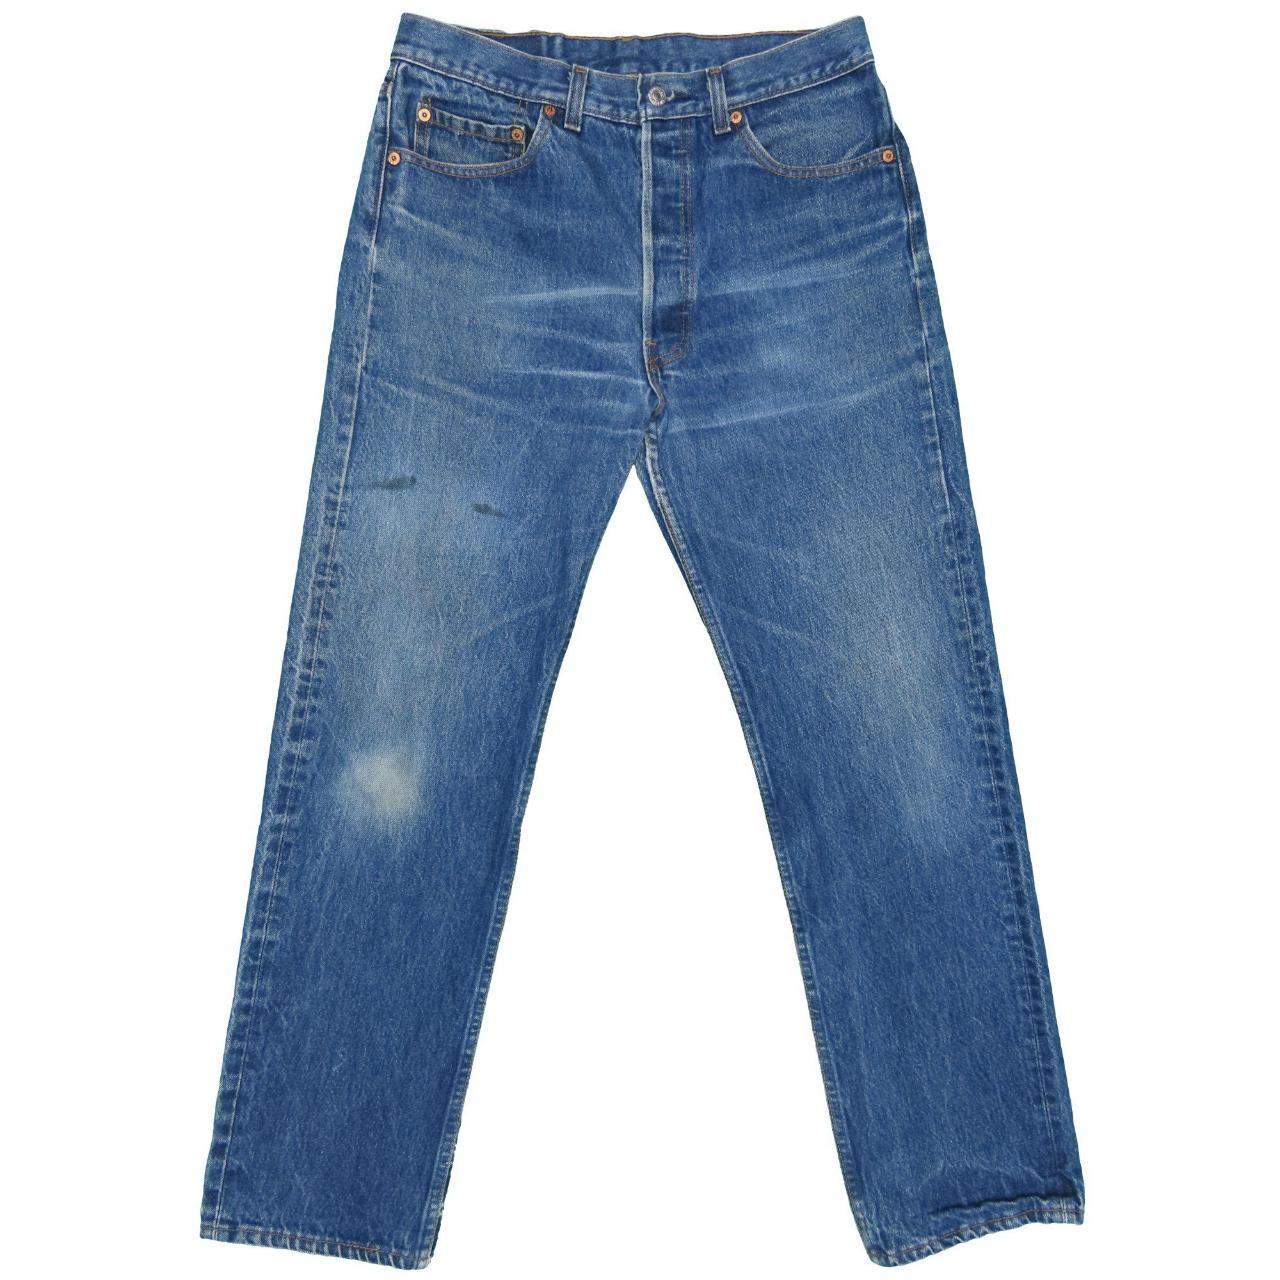 1990s Vintage Levis 501 Jeans 31x30 100%... - Depop